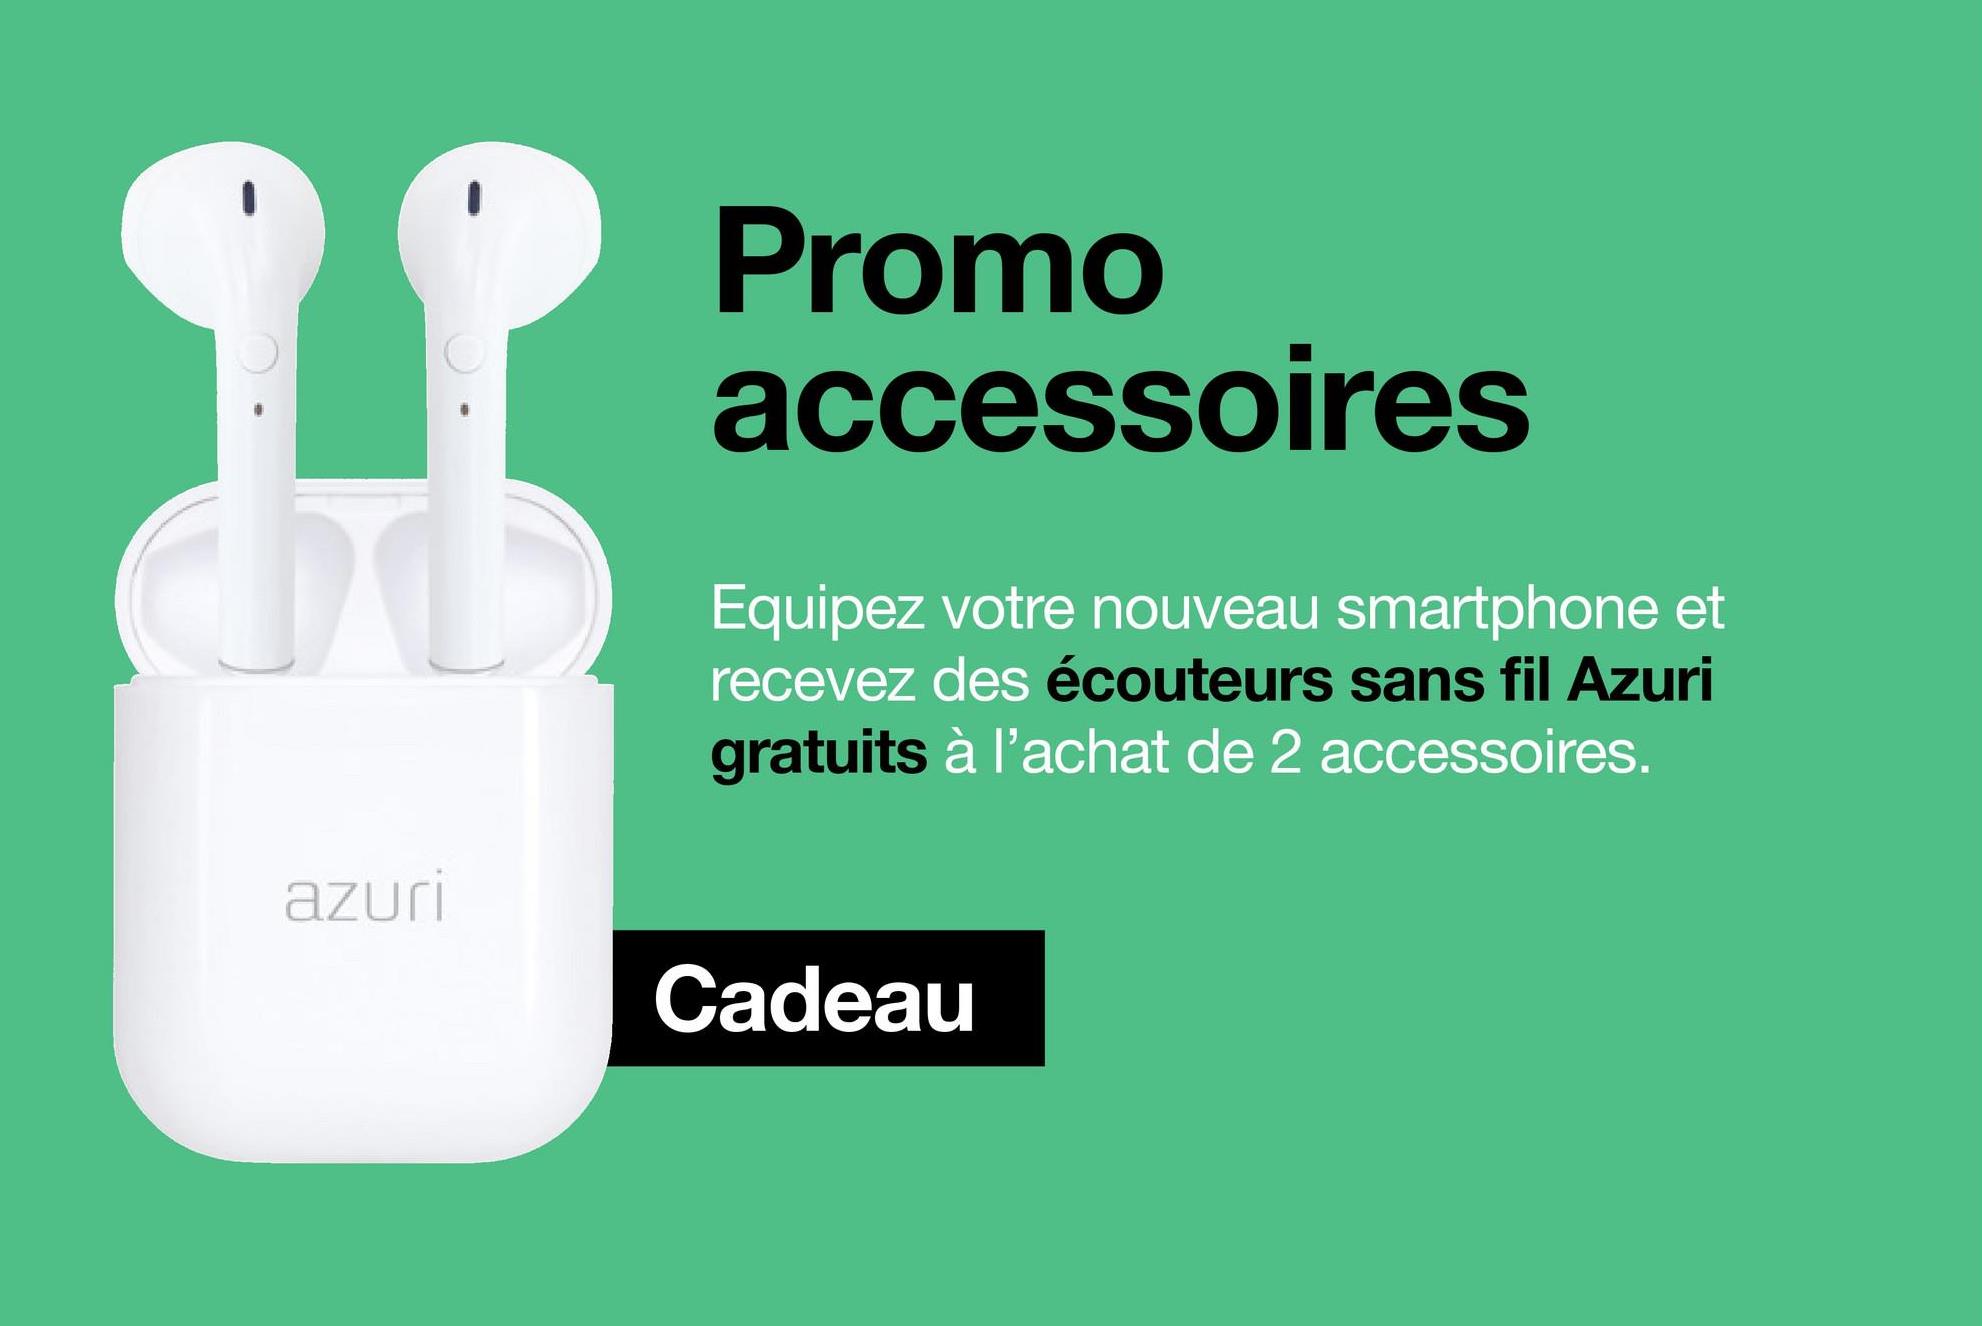 azuri
Promo
accessoires
Equipez votre nouveau smartphone et
recevez des écouteurs sans fil Azuri
gratuits à l'achat de 2 accessoires.
Cadeau